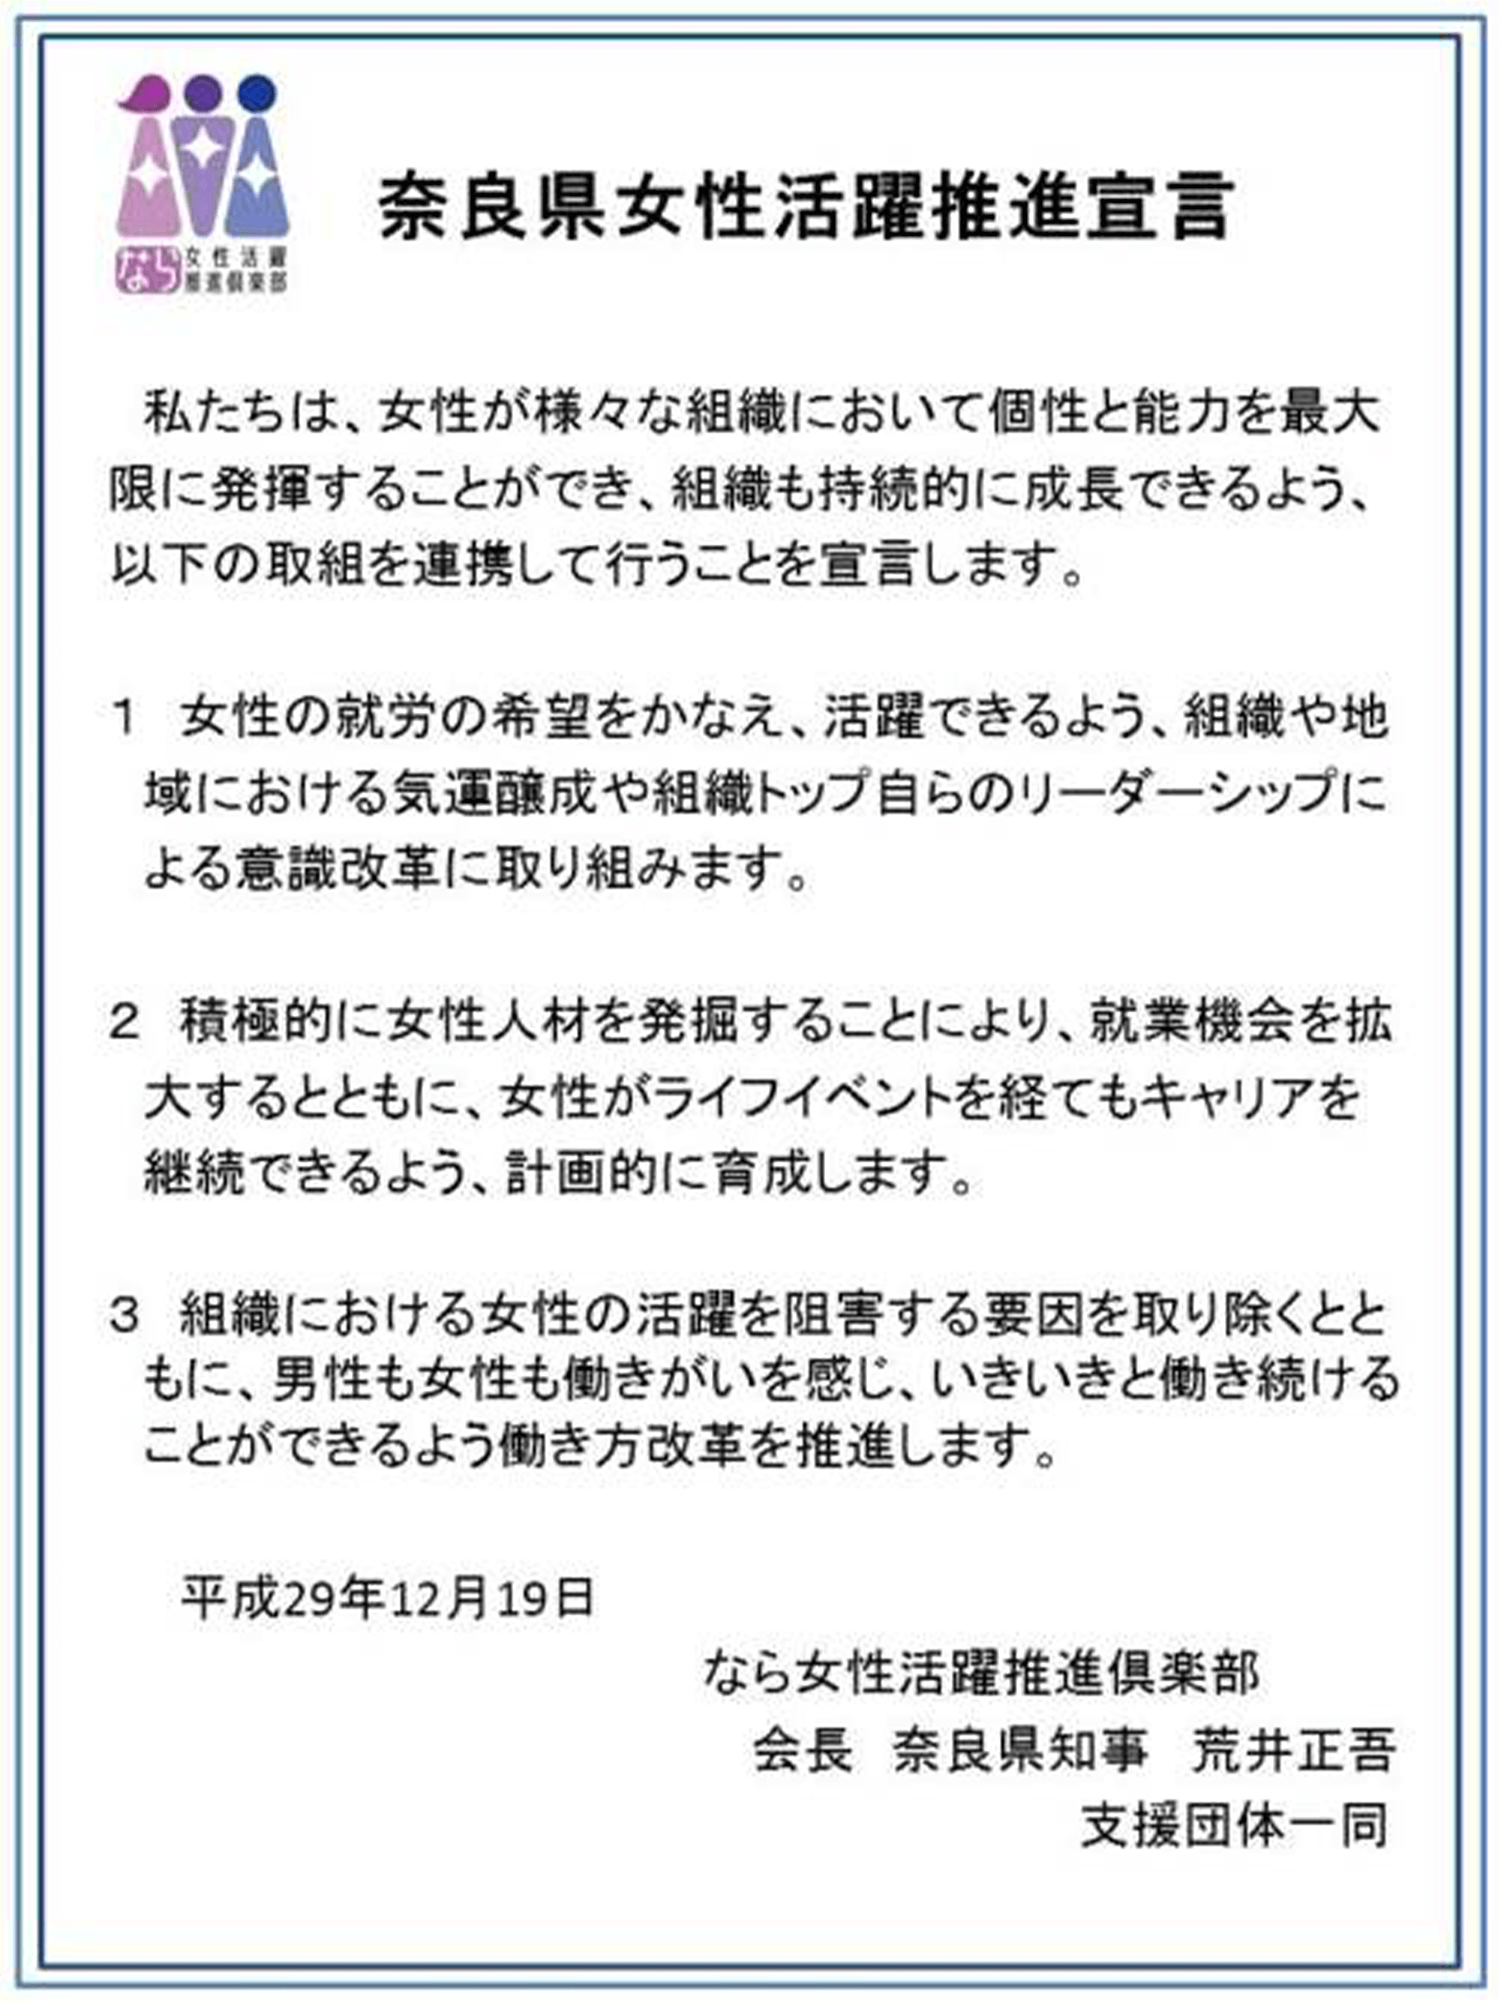 奈良県女性活躍推進宣言